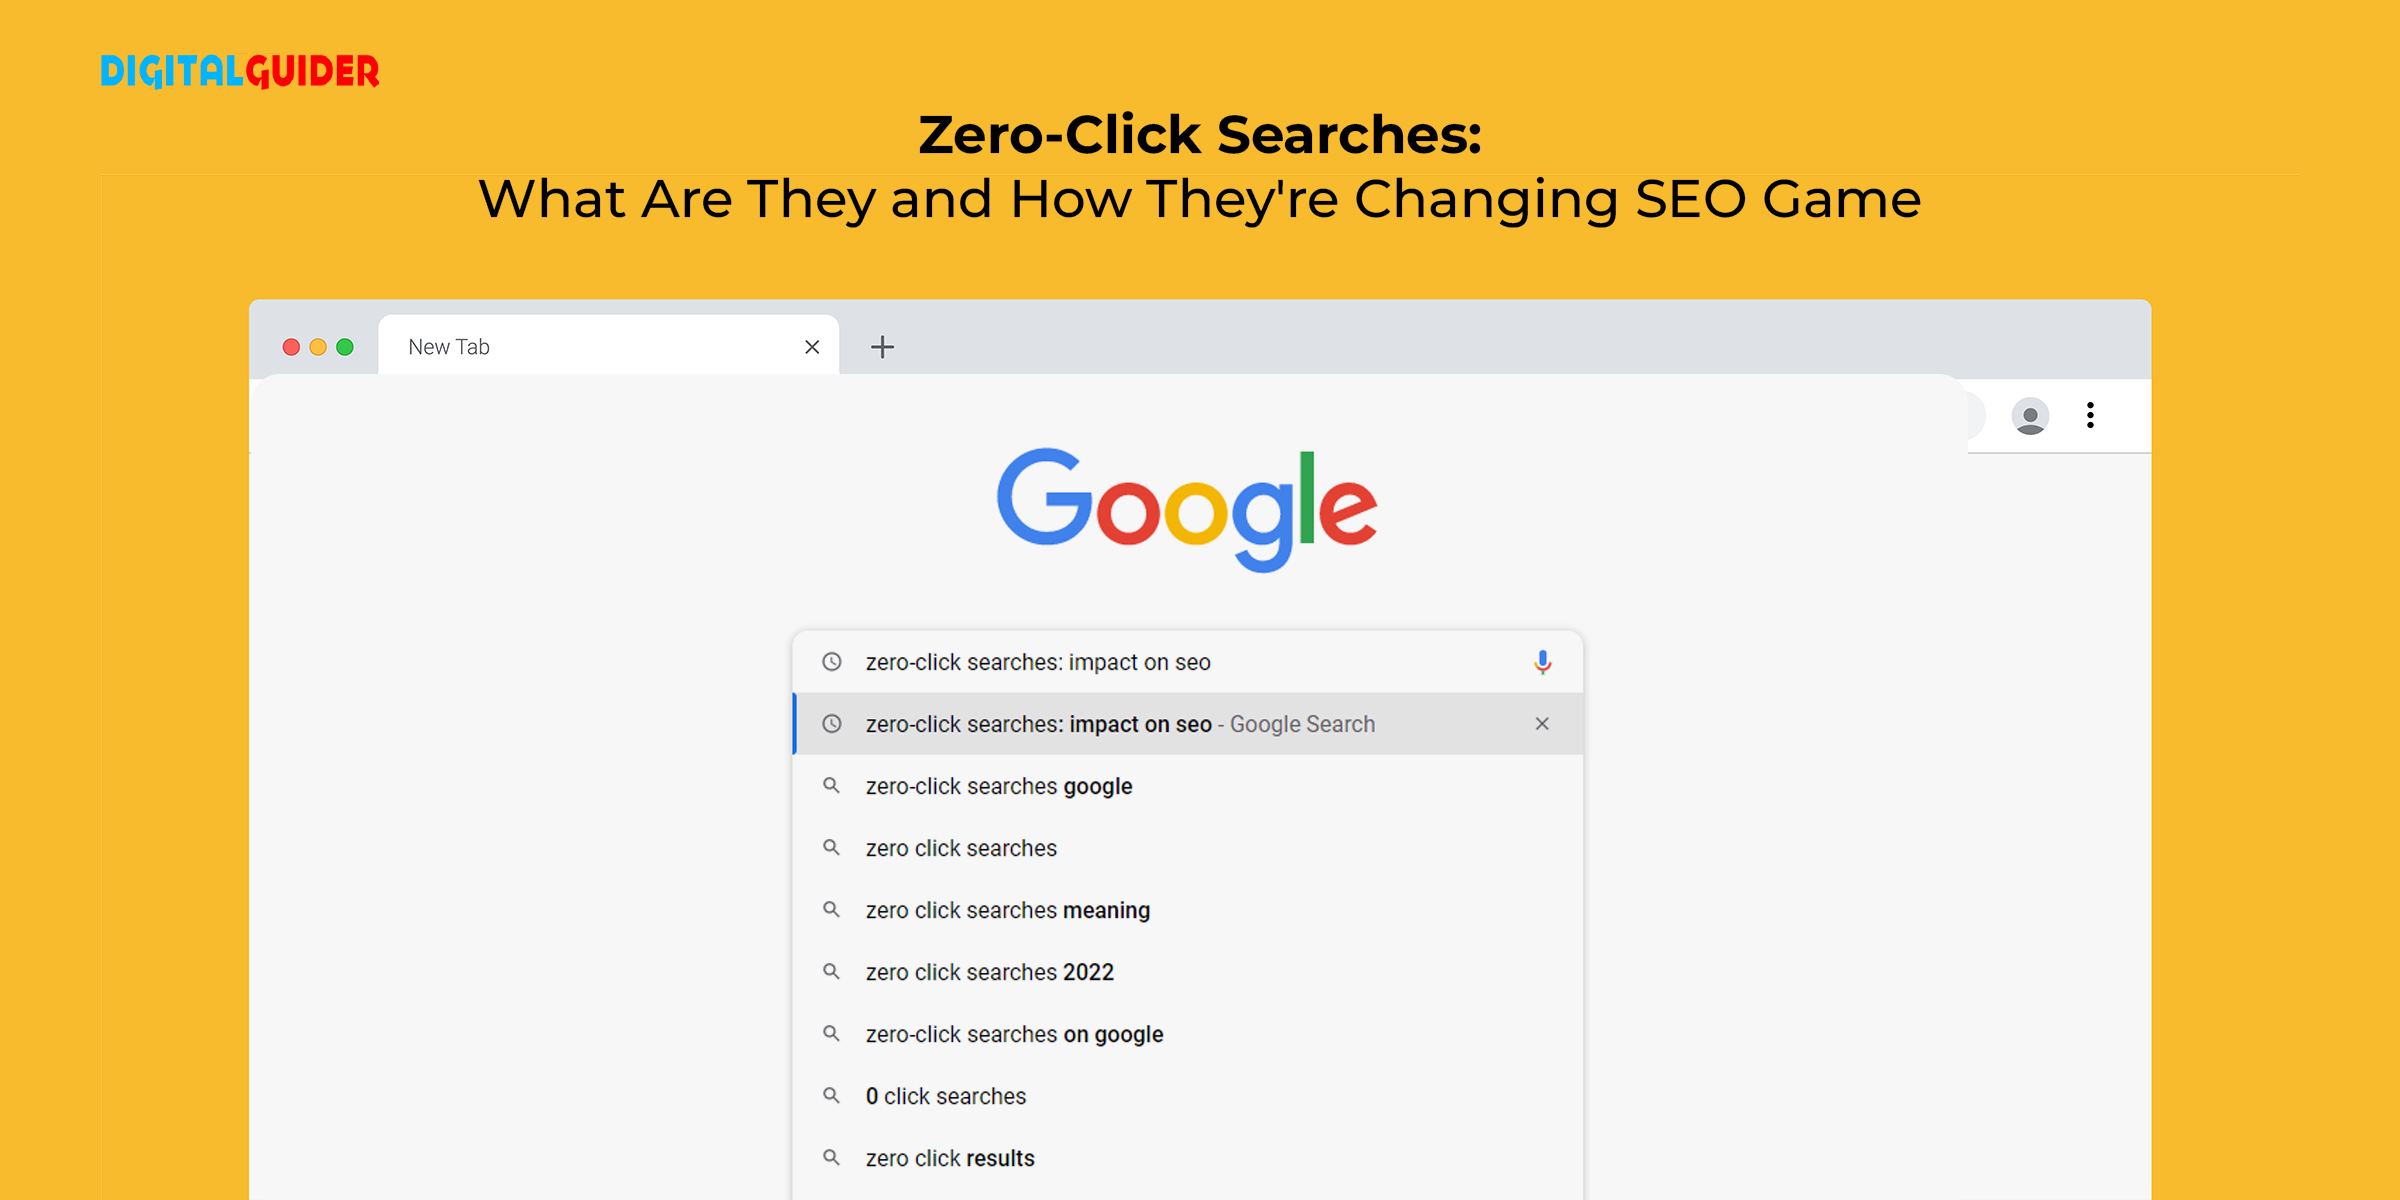 What are Zero-Click Searches